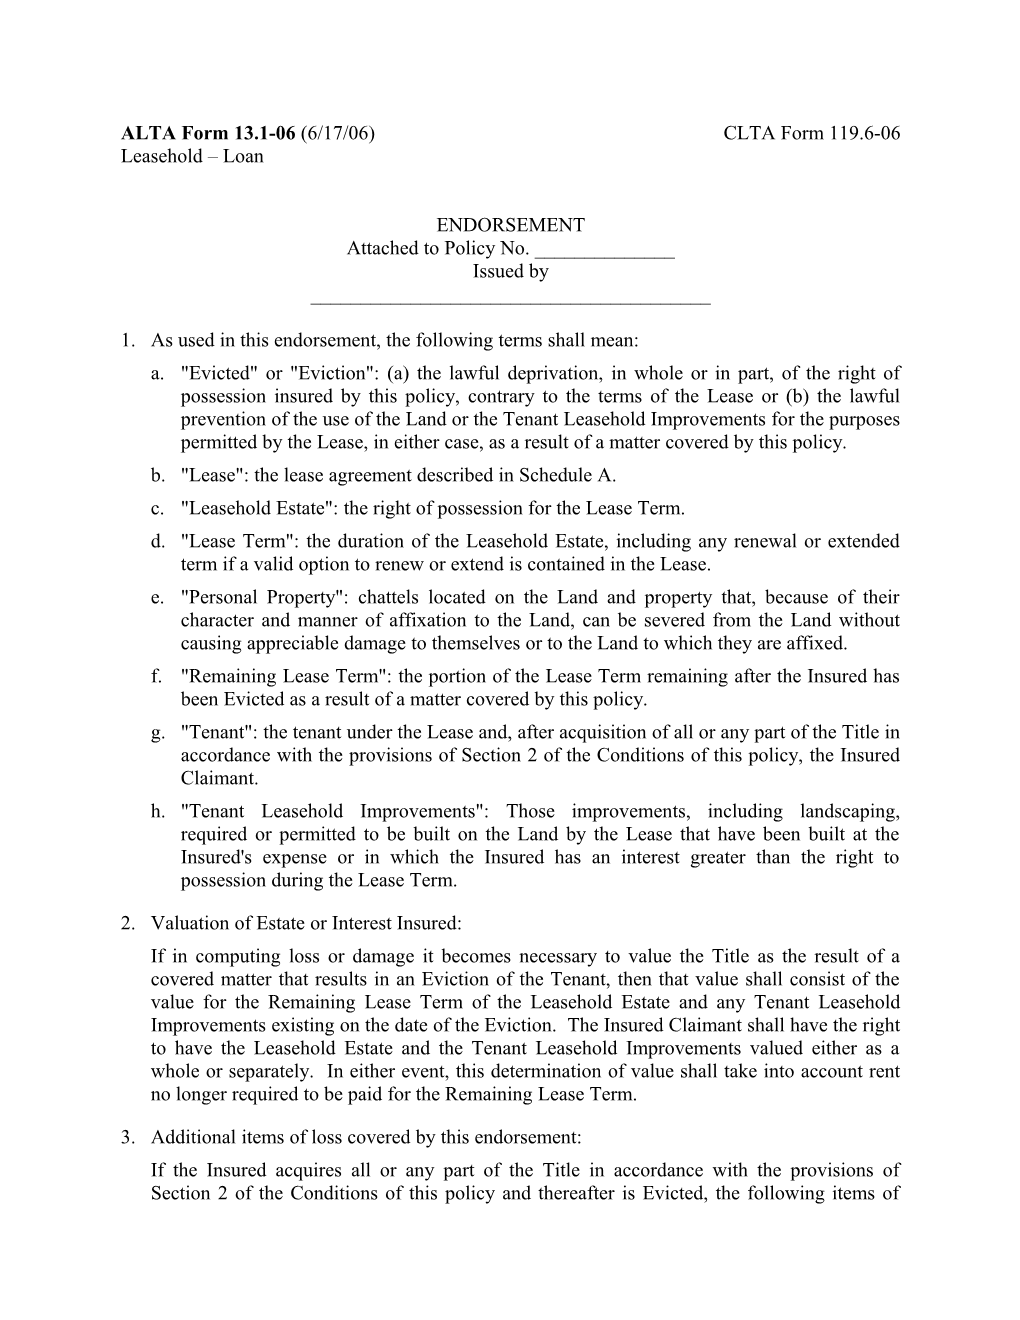 ALTA Form 13.1-06 (6/17/06)CLTA Form 119.6-06